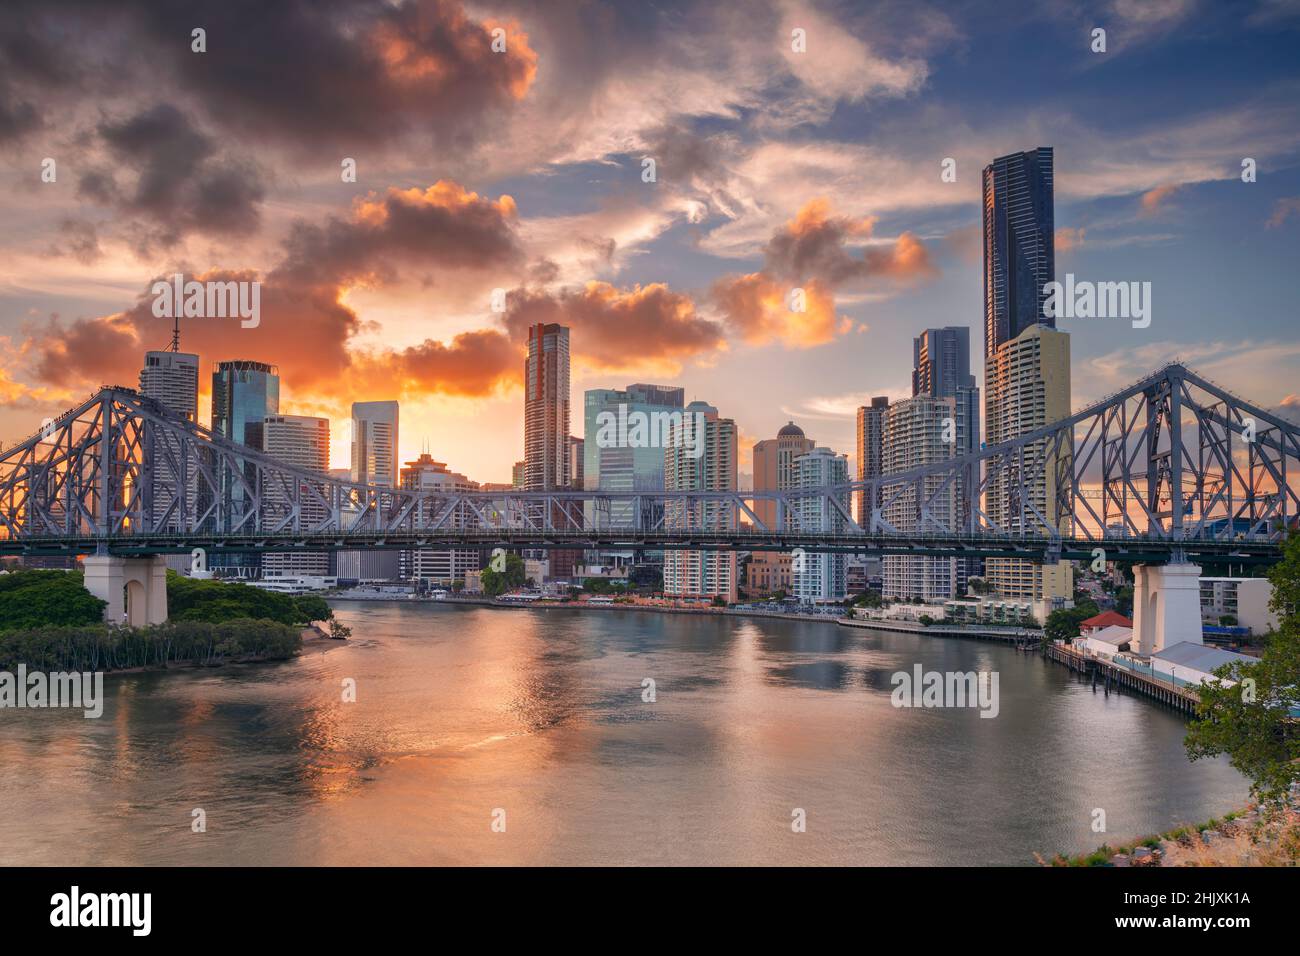 Brisbane, Australie.Image du paysage urbain de Brisbane avec le pont Story Bridge et le reflet de la ville sur le fleuve Brisbane au coucher du soleil. Banque D'Images